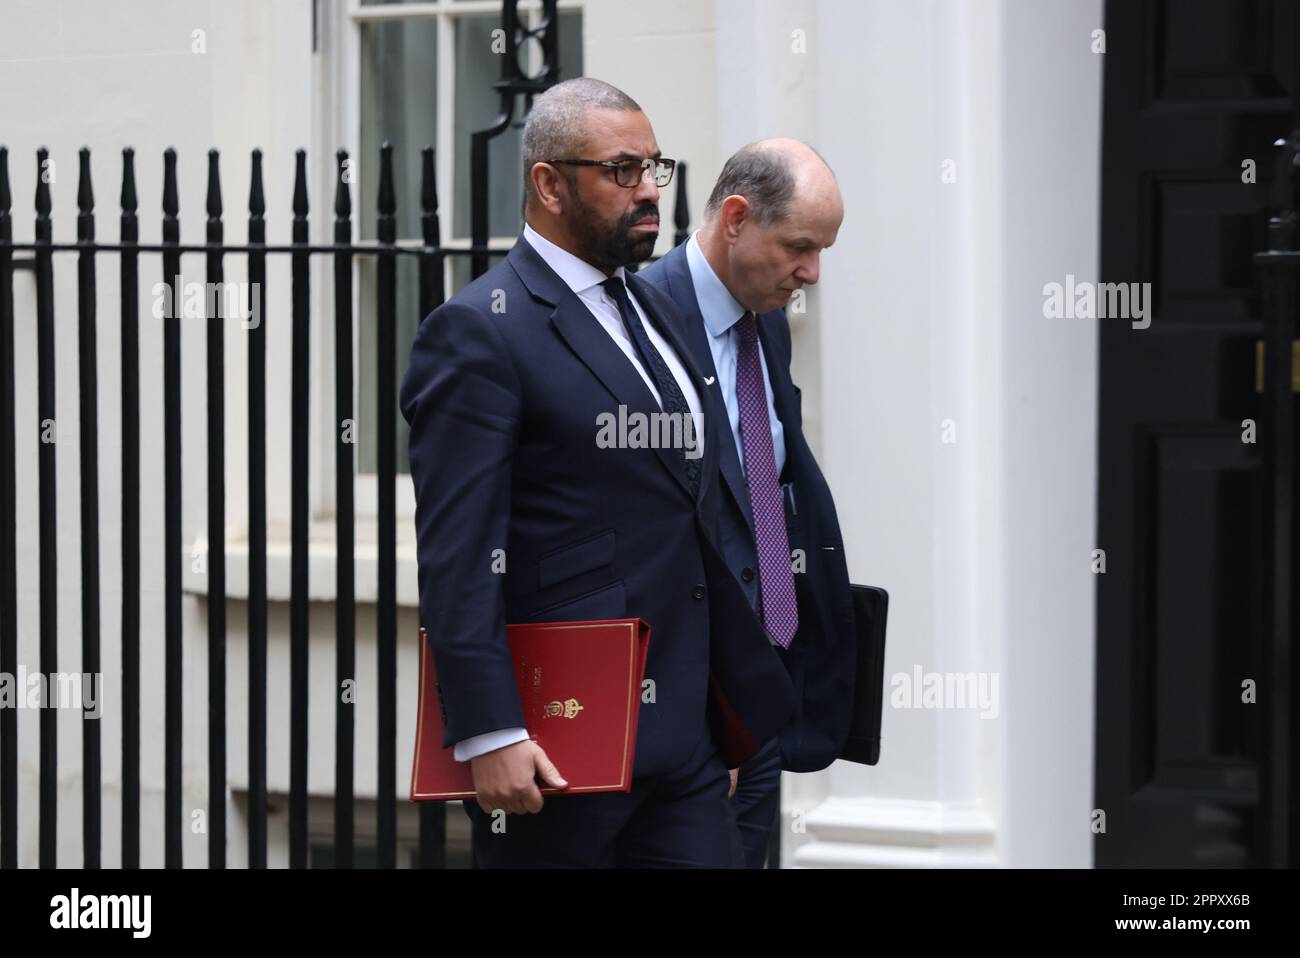 Le secrétaire aux Affaires étrangères James (à gauche) arrive habilement à Downing Street à Londres. Le vice-premier ministre Oliver Dowden présidera une réunion de Cobra sur l'évacuation des ressortissants britanniques du Soudan. Date de la photo: Mardi 25 avril 2023. Banque D'Images